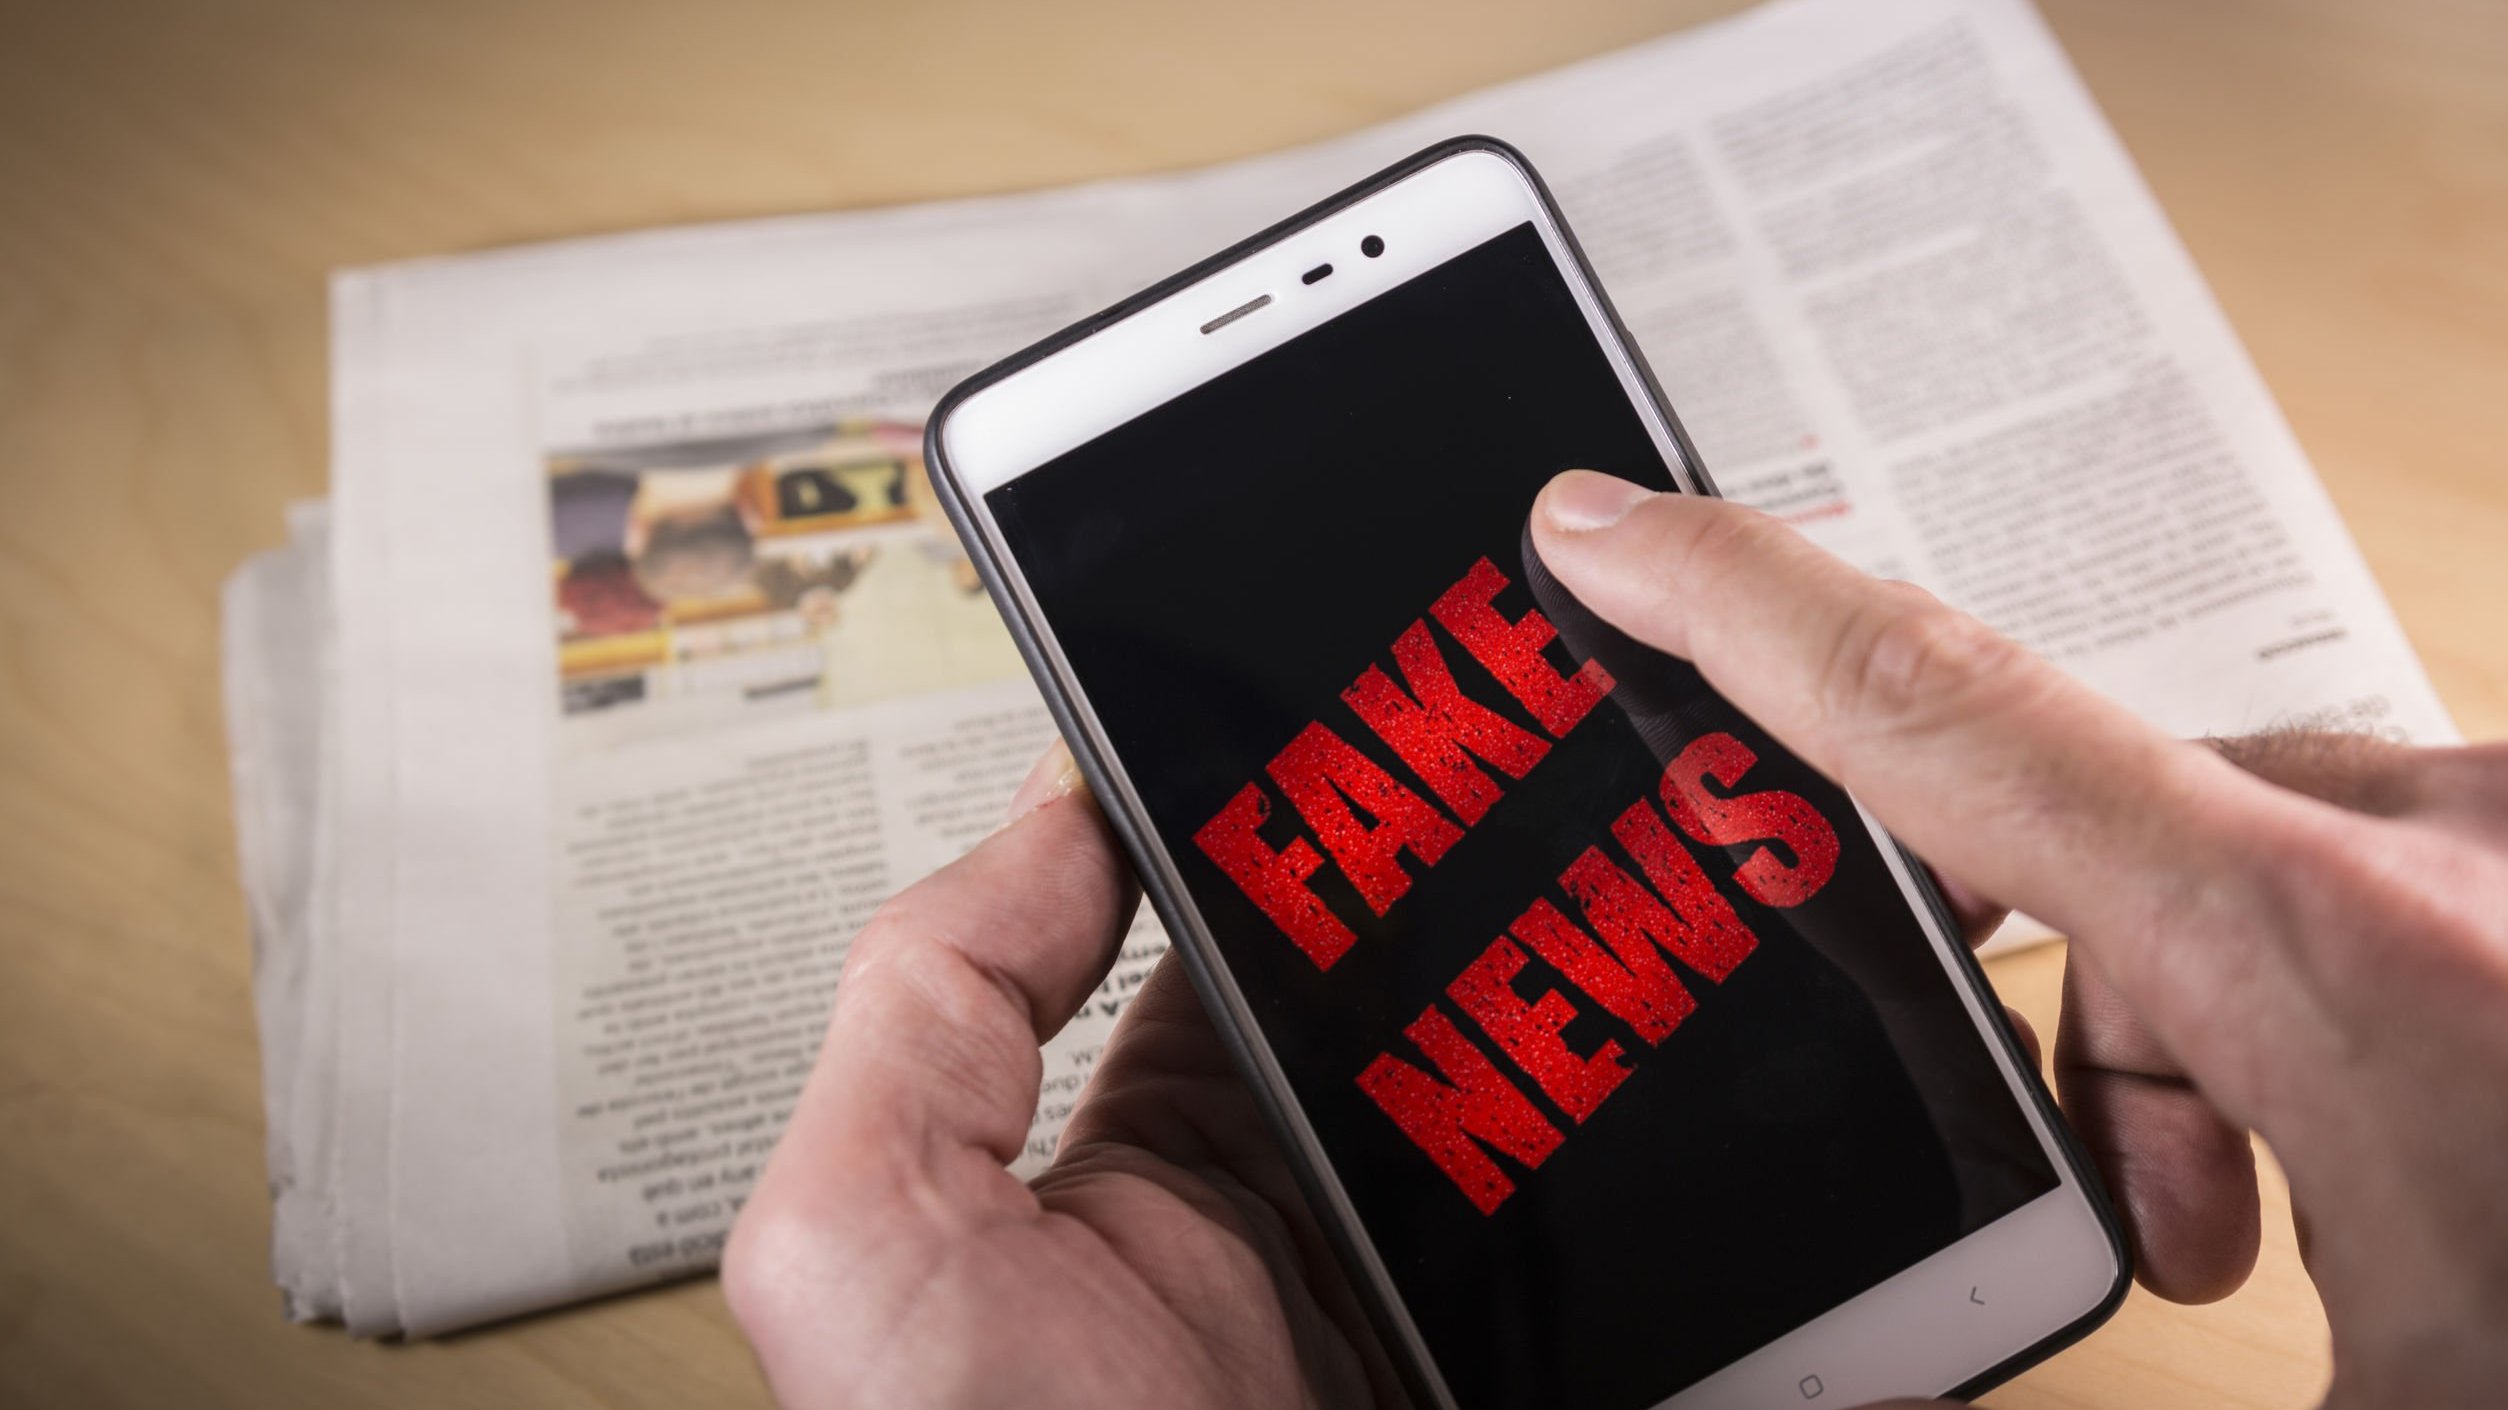 Foto de celular escrito fake news na tela, e jornal ao fundo em cima de mesa.